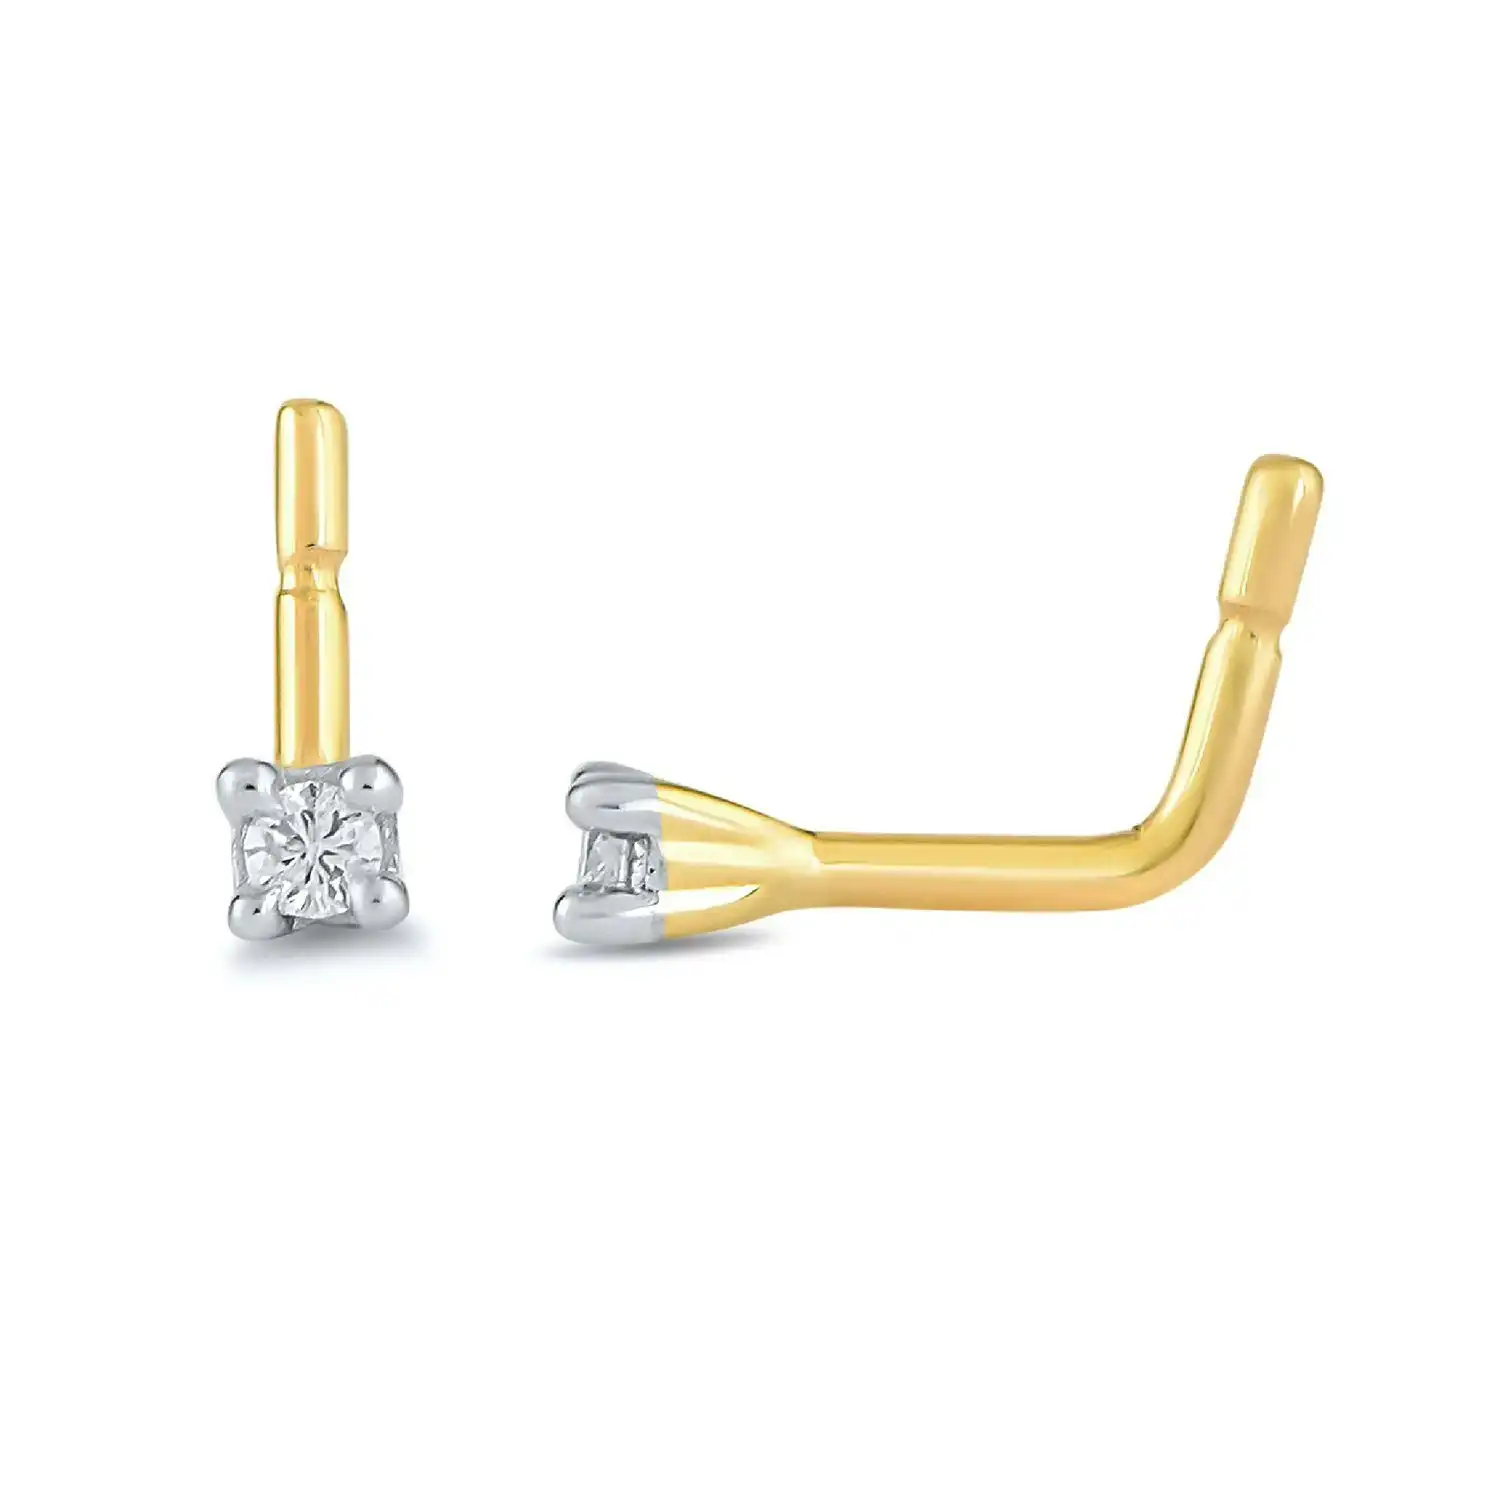 Diamond Set Nose Ring Pin in 9ct Yellow Gold